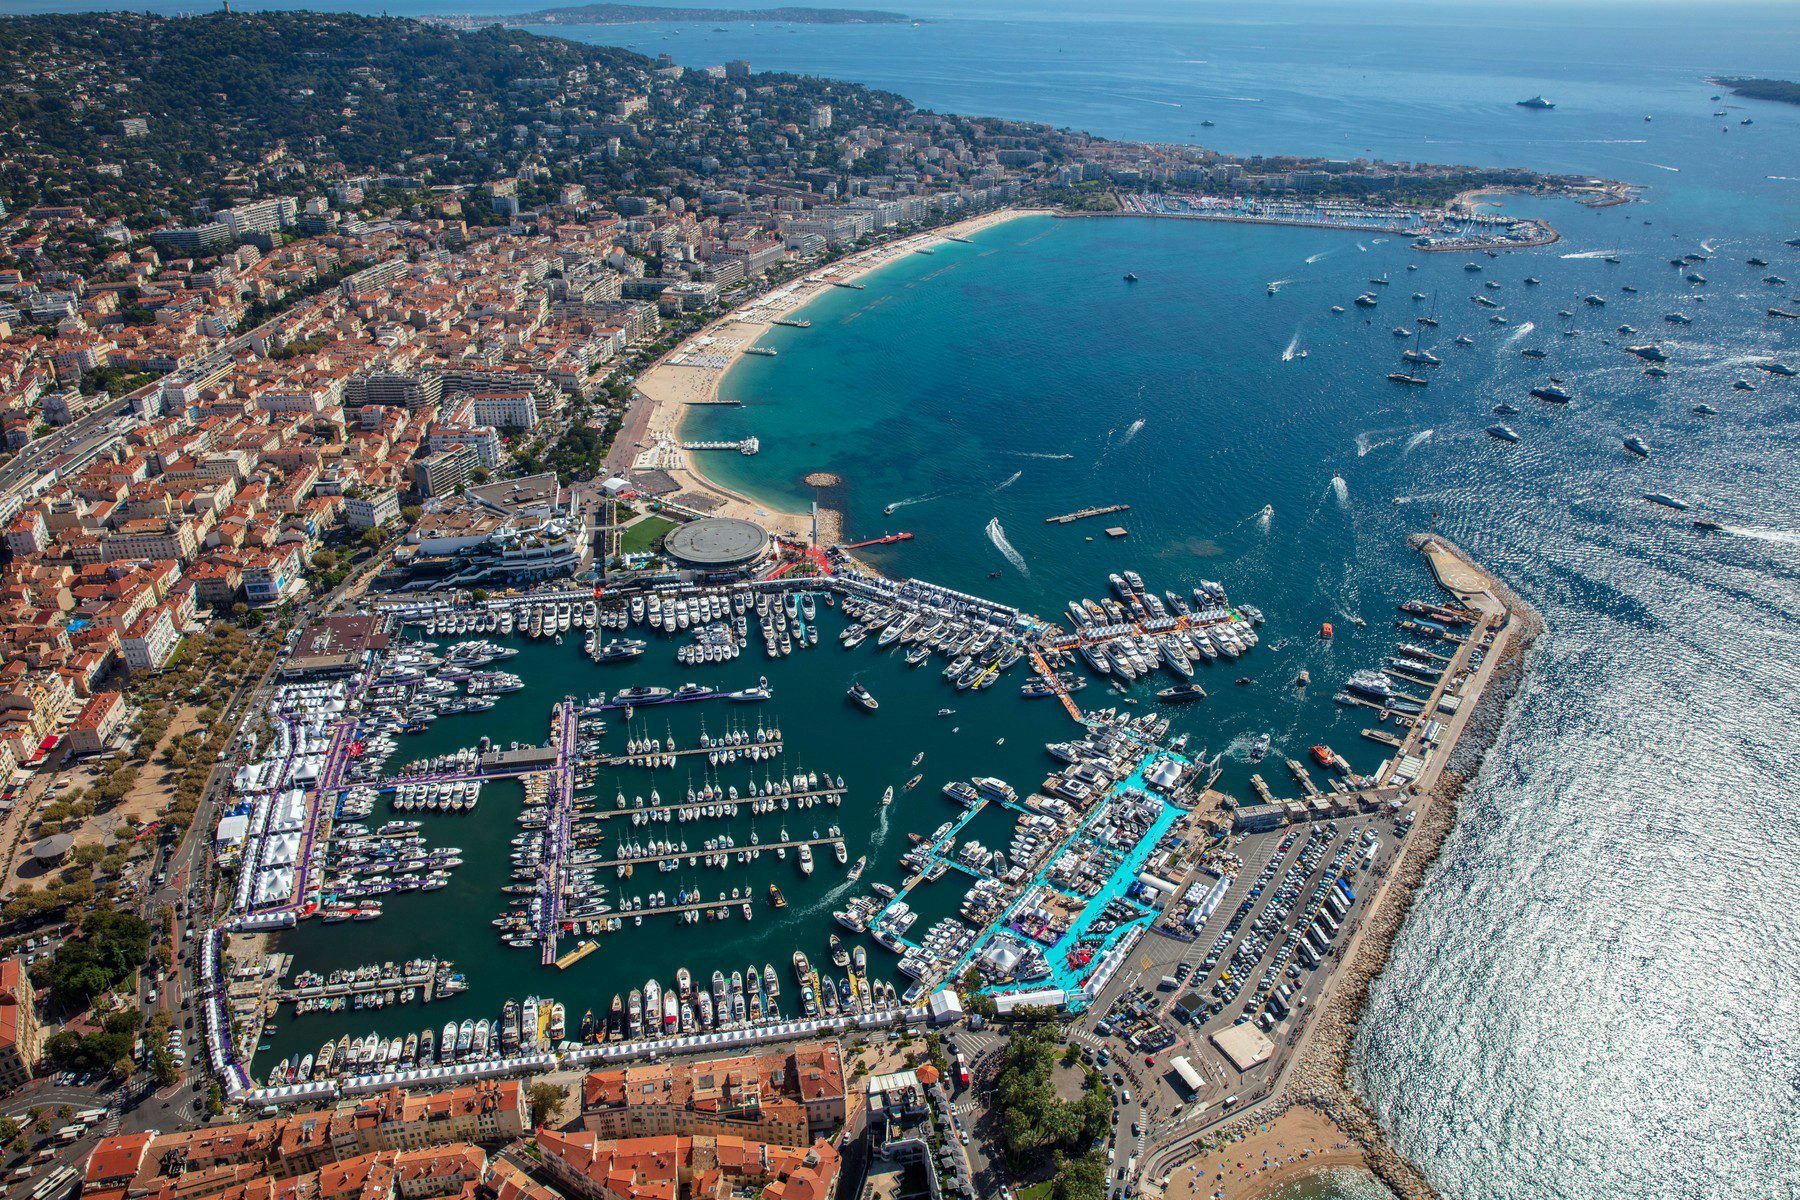 vanquish boatshow in Cannes